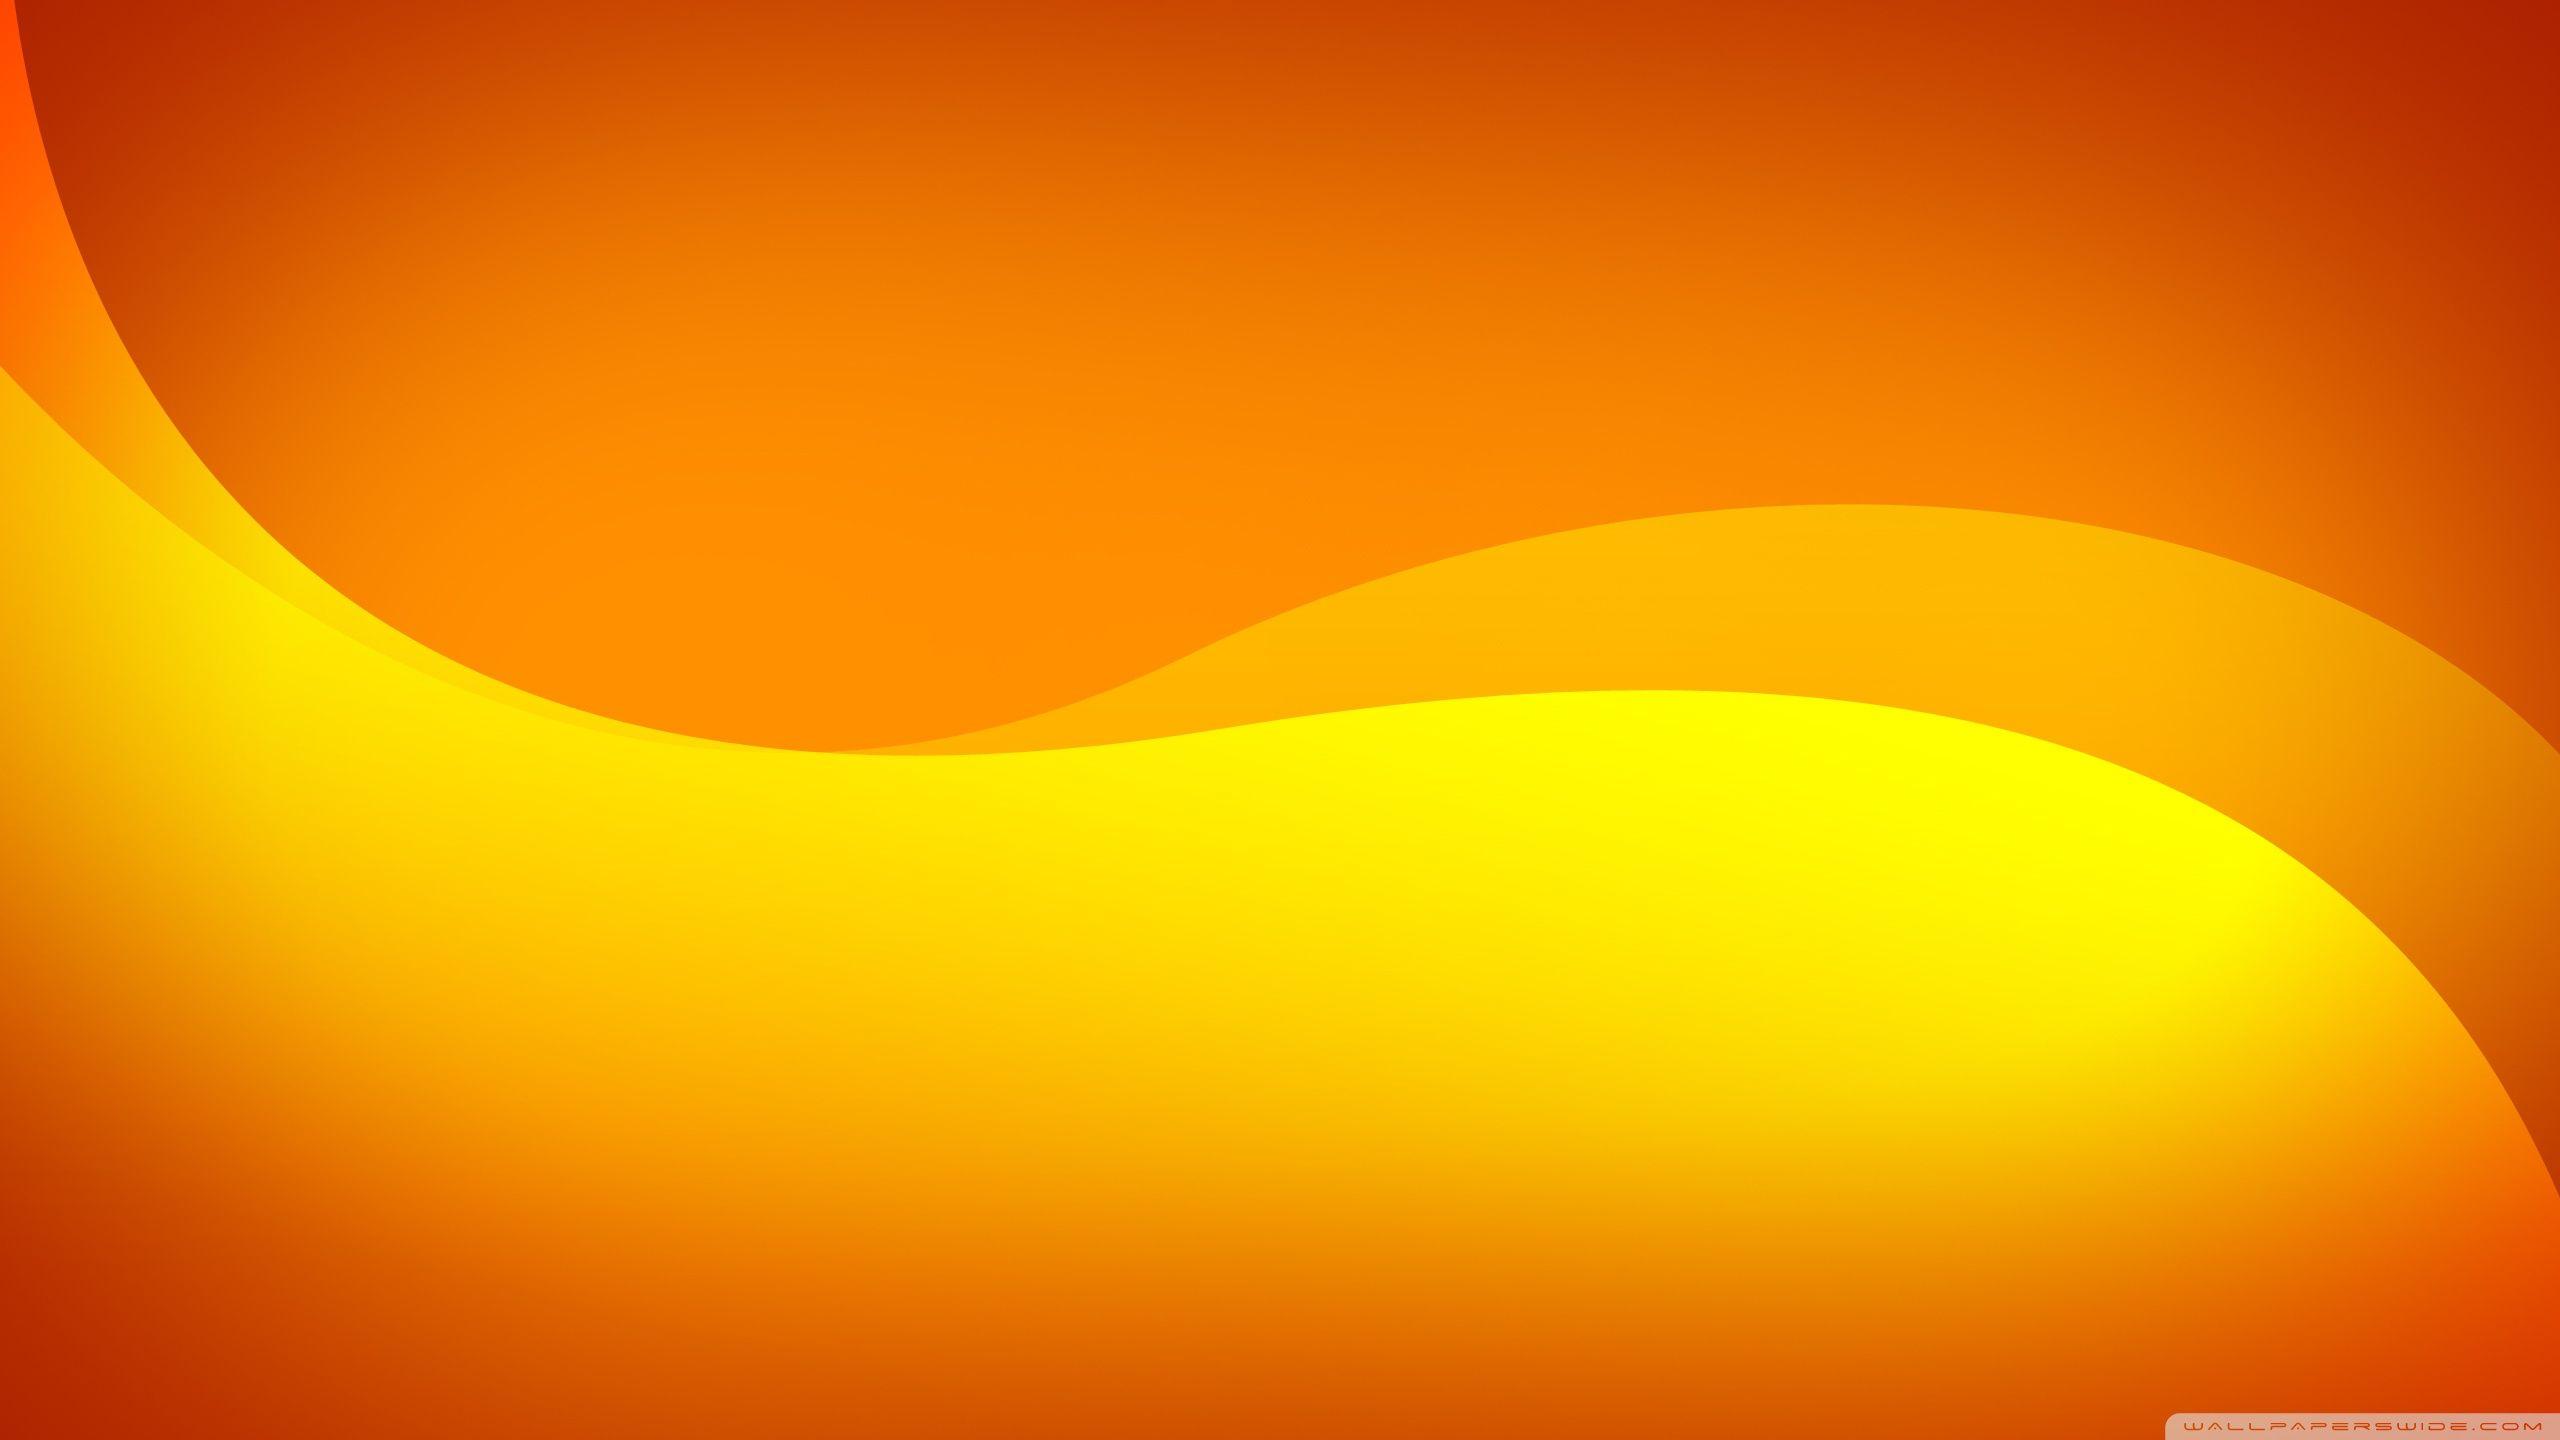 Nếu bạn muốn tìm kiếm một hình nền sáng tạo và độc đáo, đừng bỏ qua nền màu cam tuyệt đẹp này. Những sắc cam nhẹ nhàng này sẽ mang lại sự ấn tượng mạnh mẽ và khiến cho máy tính của bạn trở nên thật sự độc đáo.